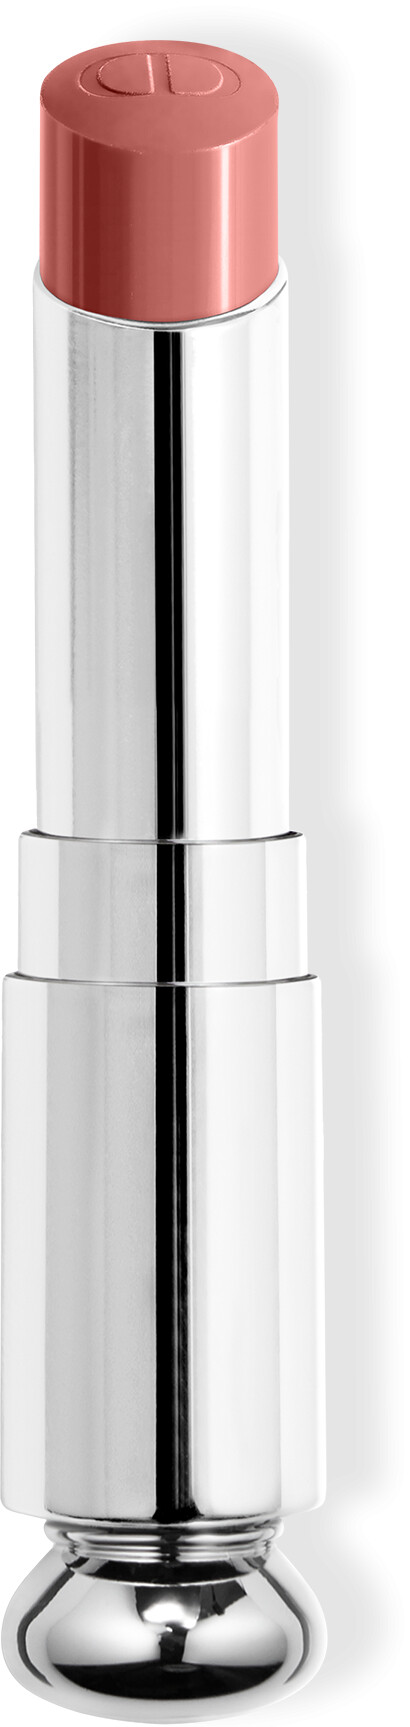 DIOR Addict Shine Lipstick Refill 3.2g 100 - Nude Look